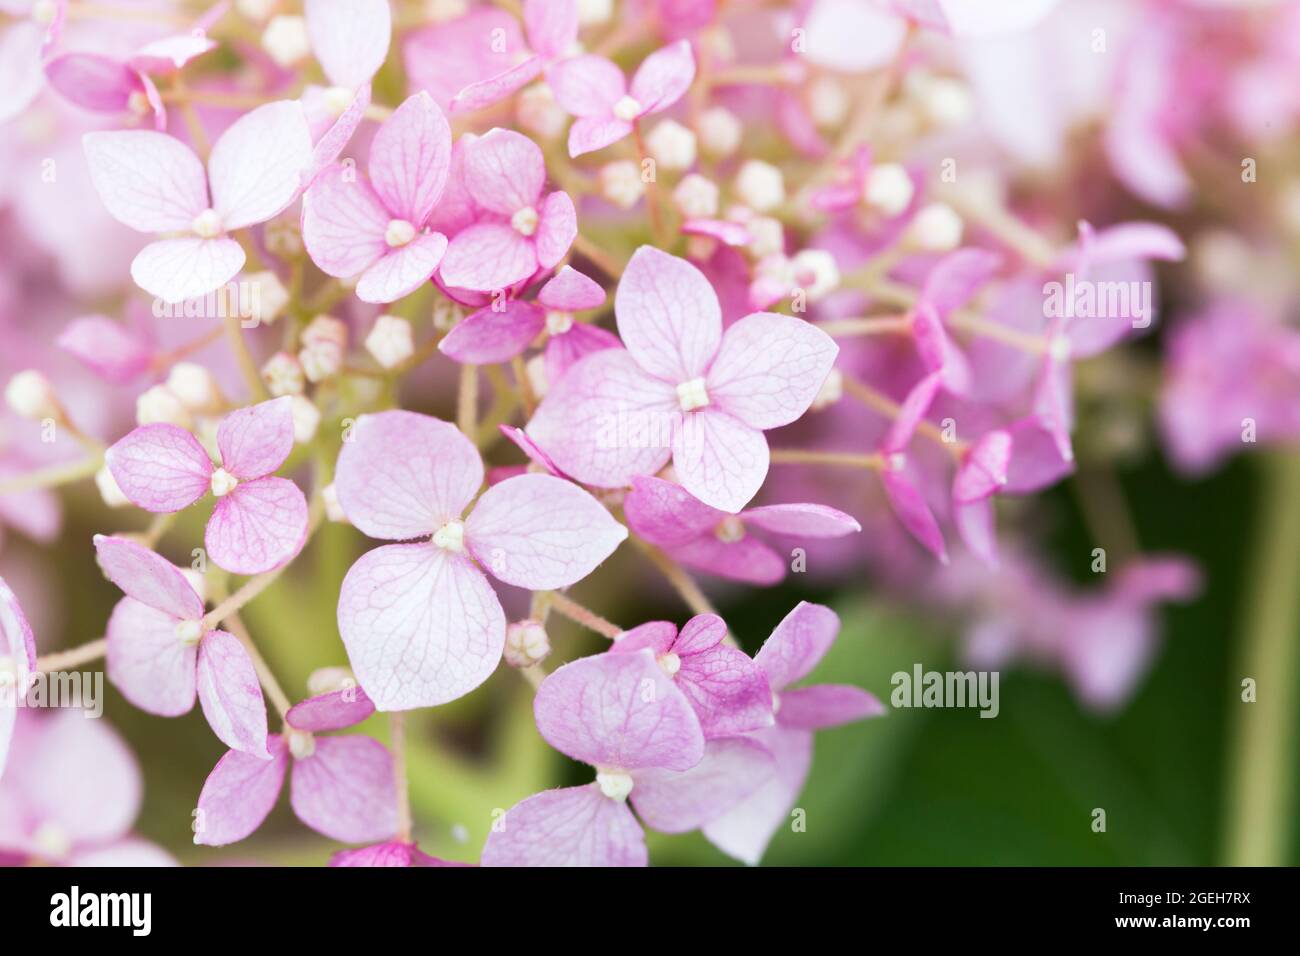 Hydrangea en fleur, fleurs roses sur fond flou, photo macro avec mise au point douce sélective Banque D'Images